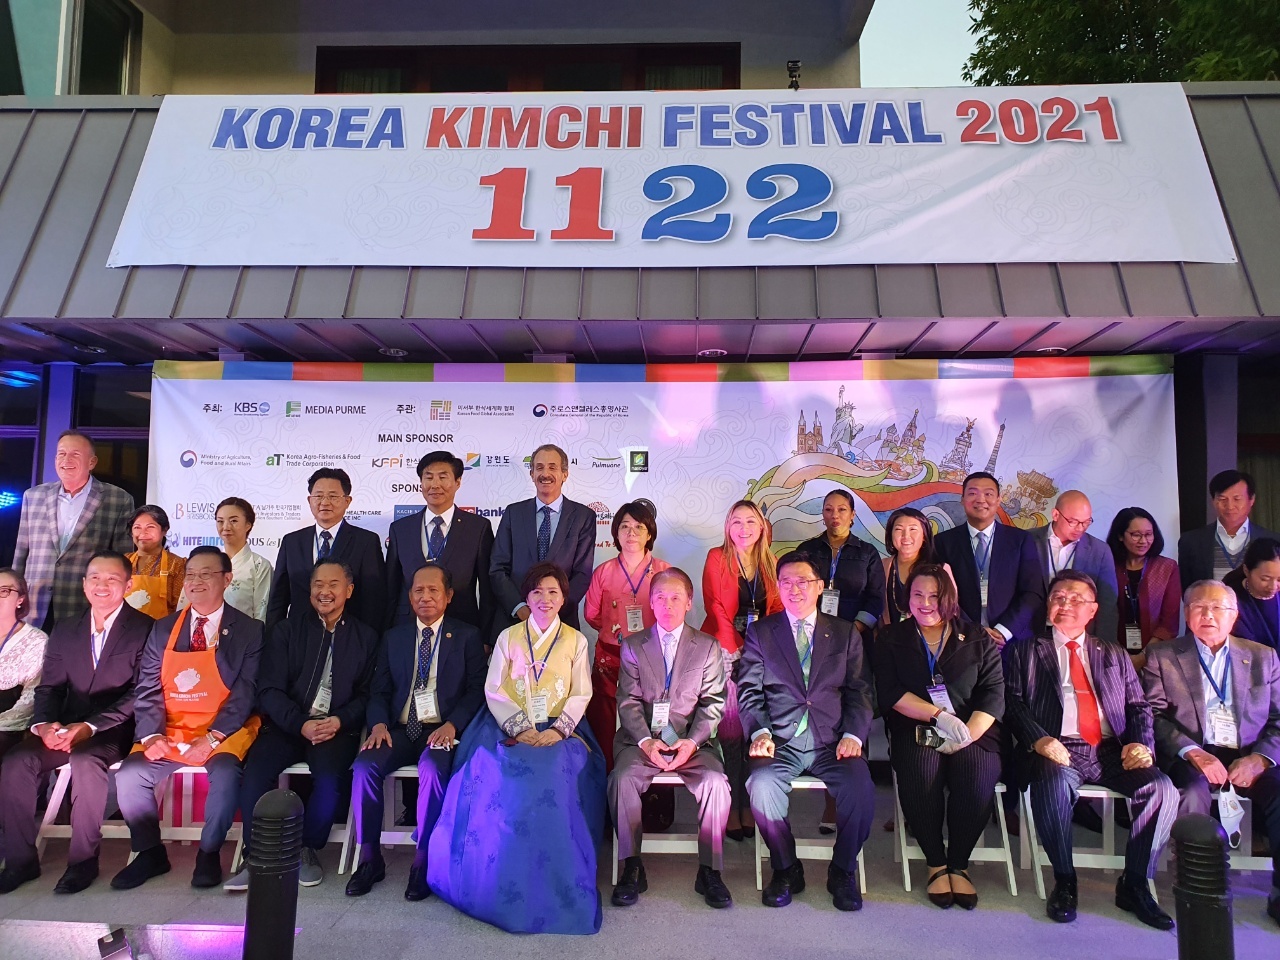 임경숙 교수, 미국 캘리포니아주 11월 22일 ‘김치의 날’로 제정, 한식 홍보 계기로